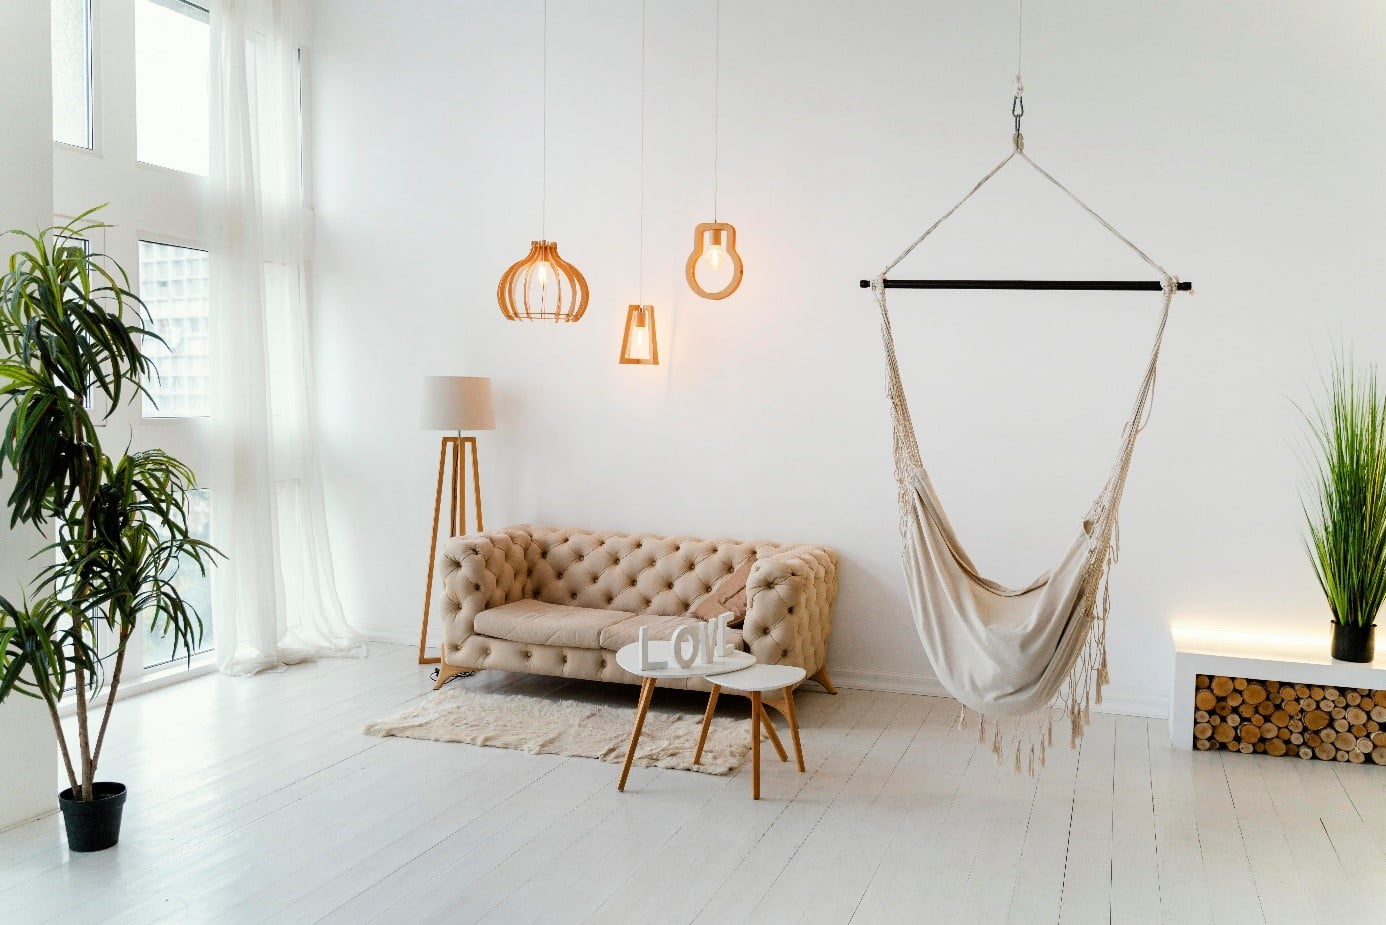 Les secrets du minimalisme : décoration épurée et fonctionnelle